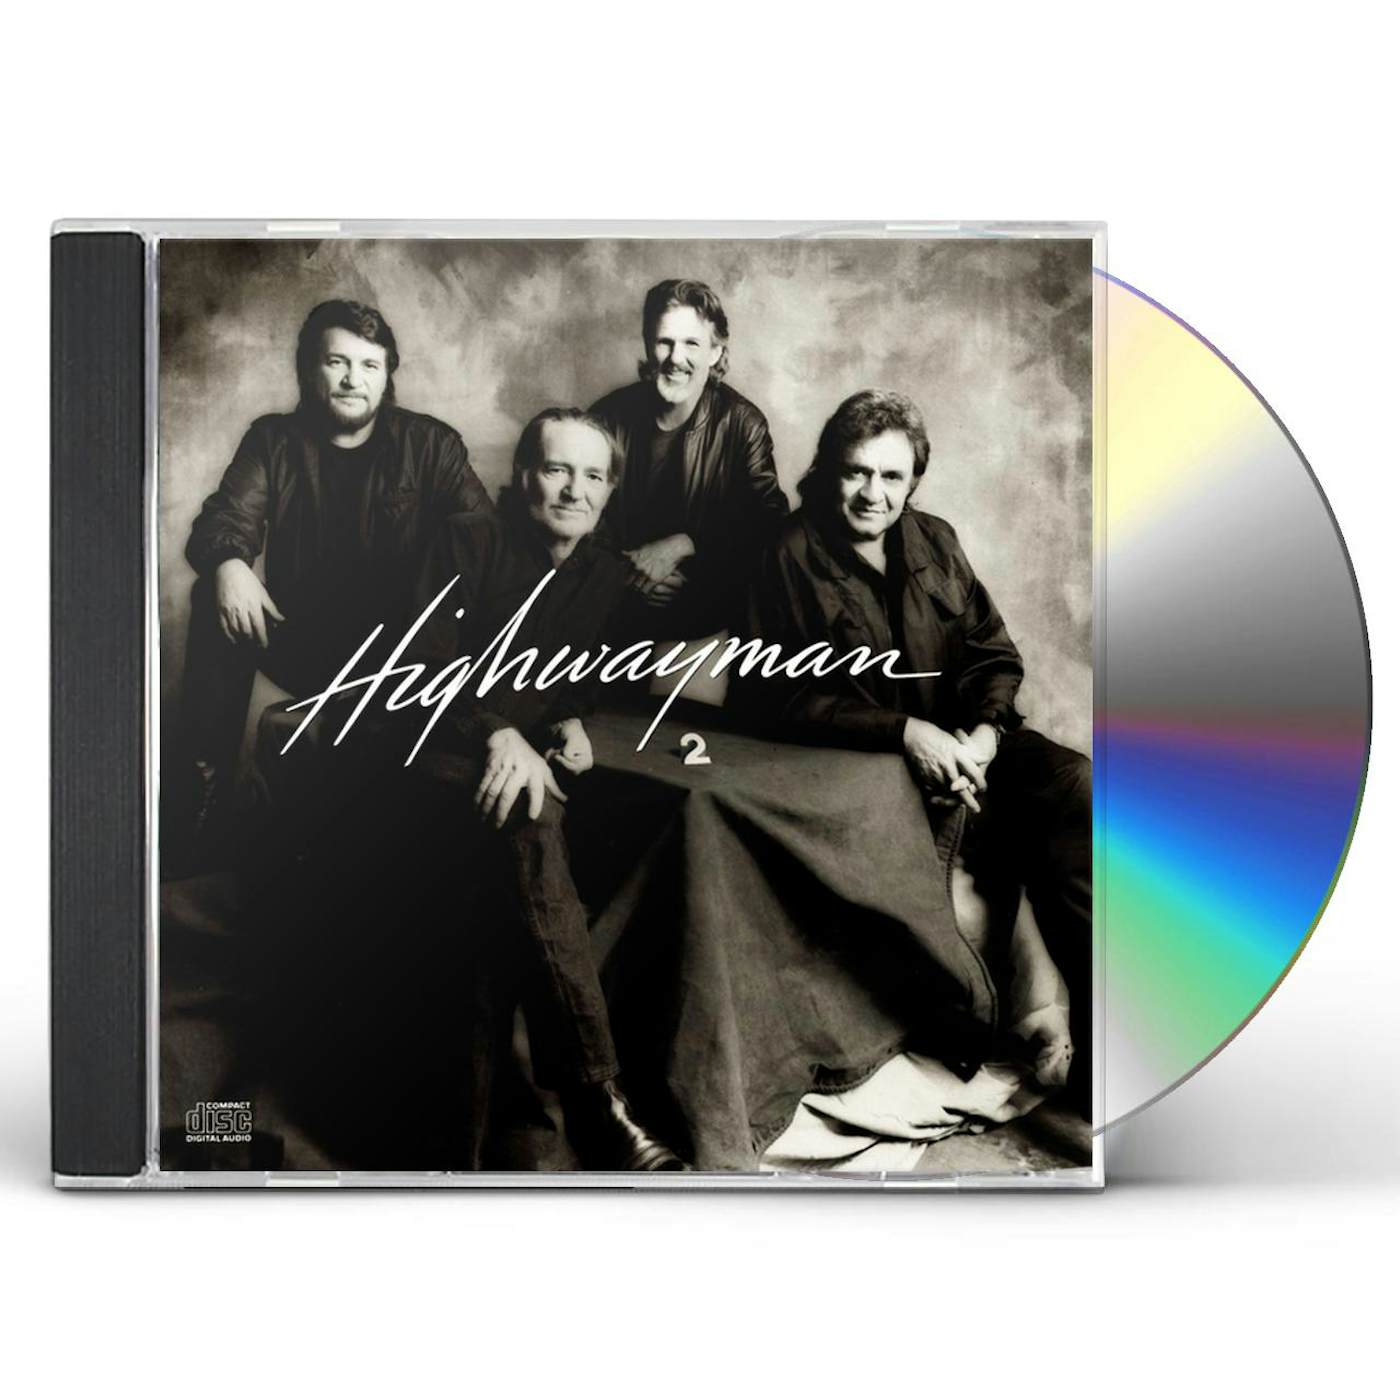 The Highwaymen 2 CD